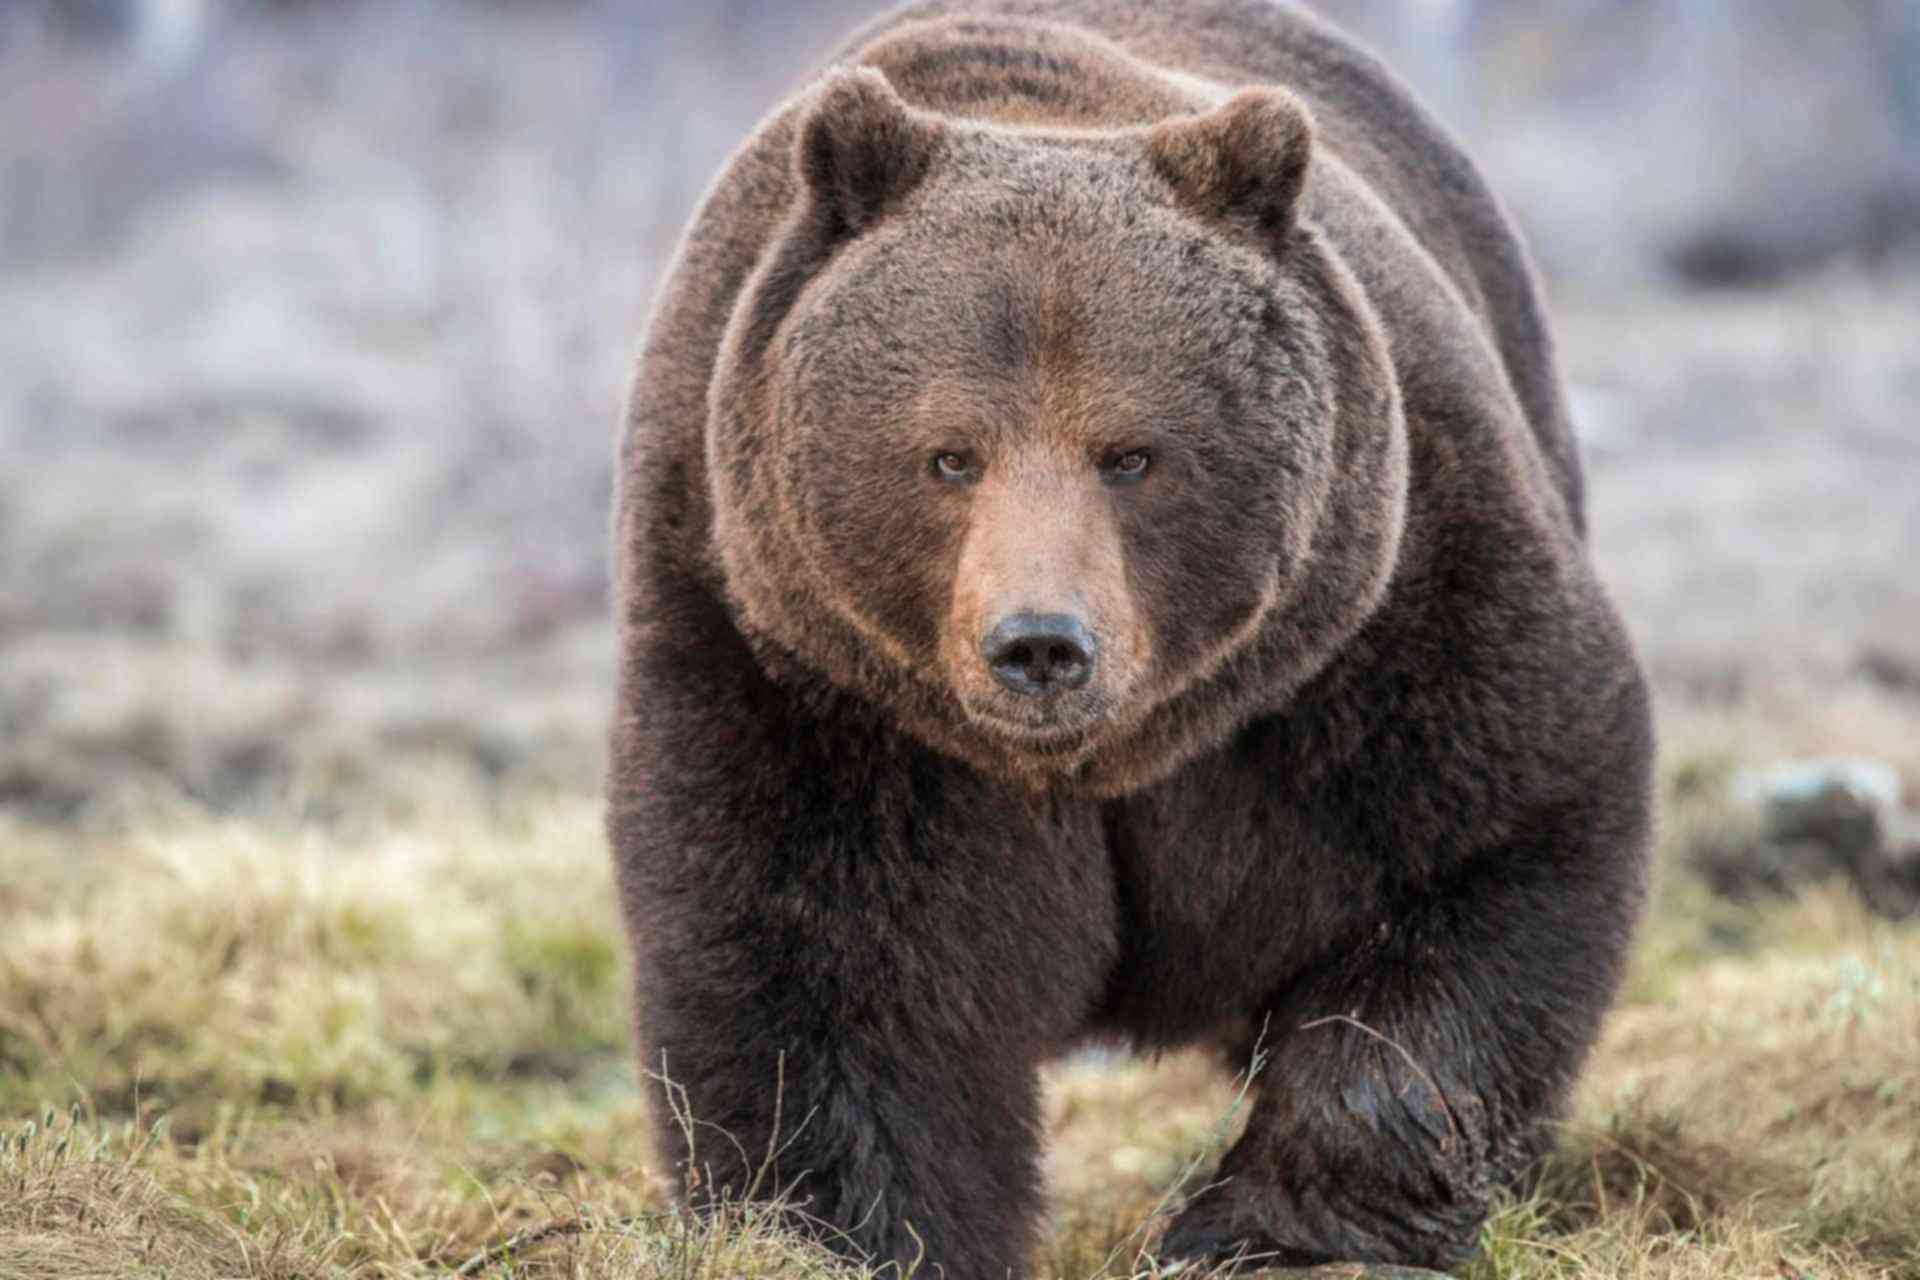 До весны не будить: в московском зоопарке уснули медведи